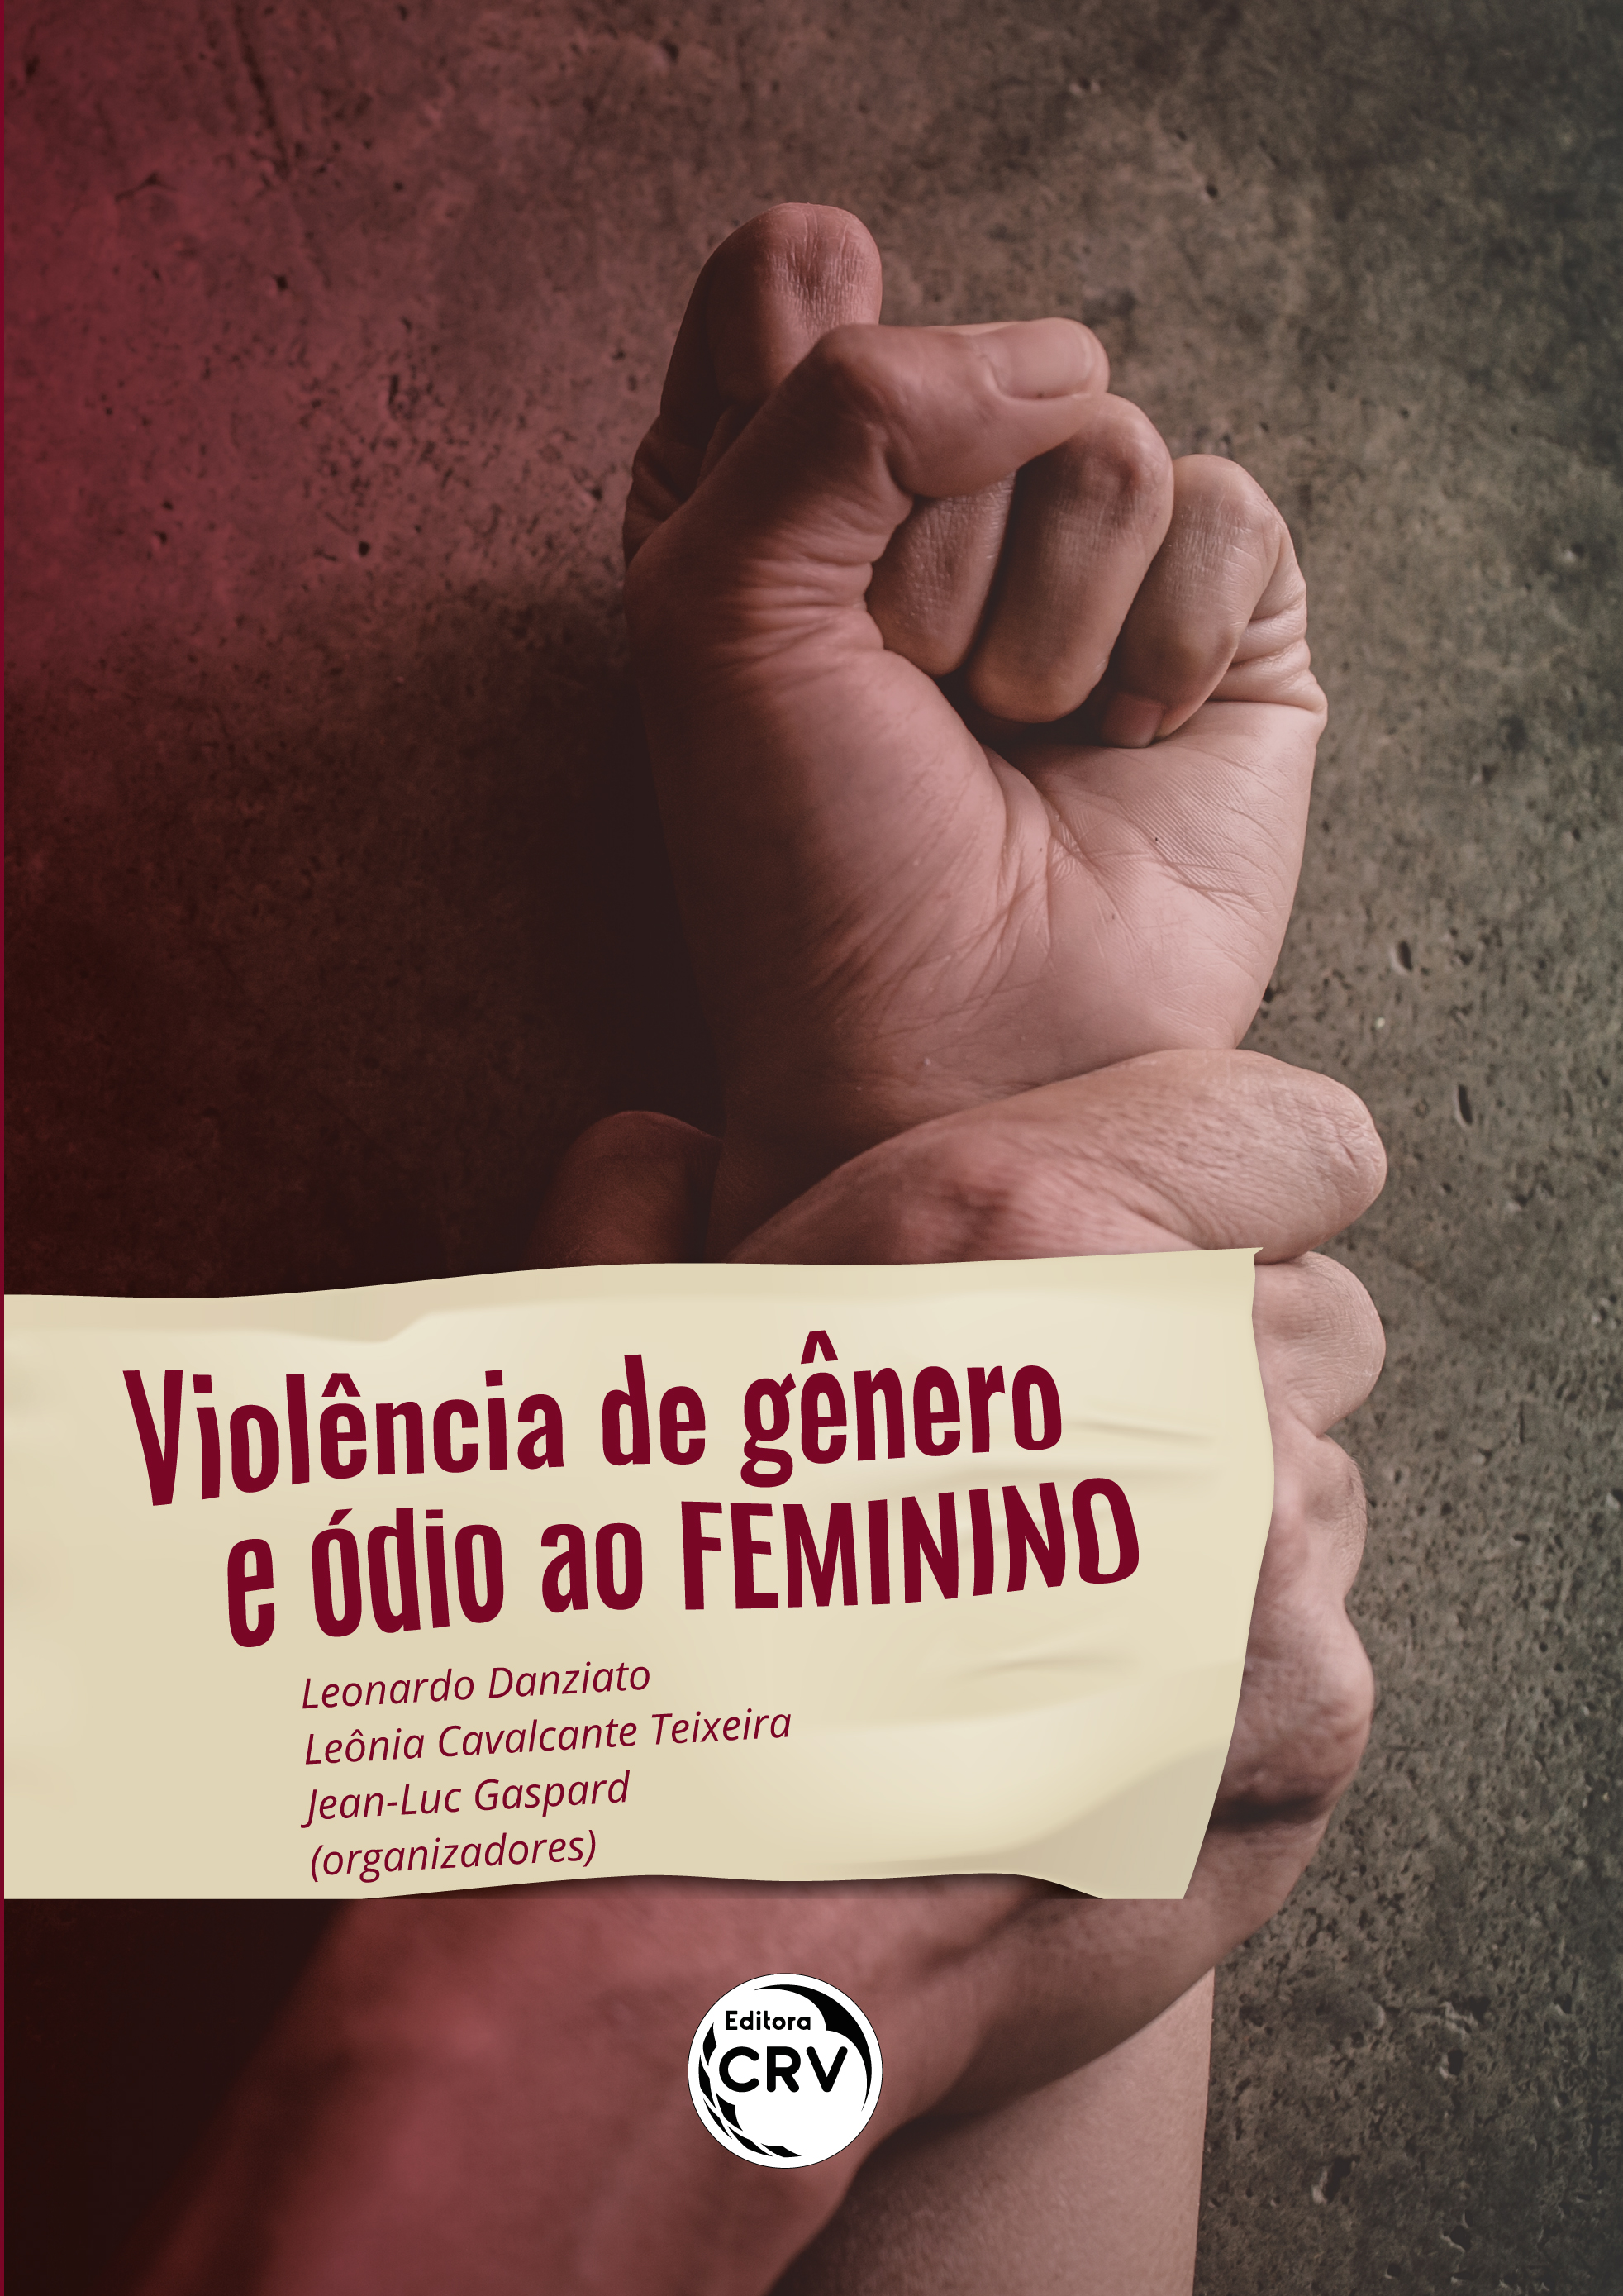 Marilia Ferreira Teixeira - Estagiária de psicologia - Grupo